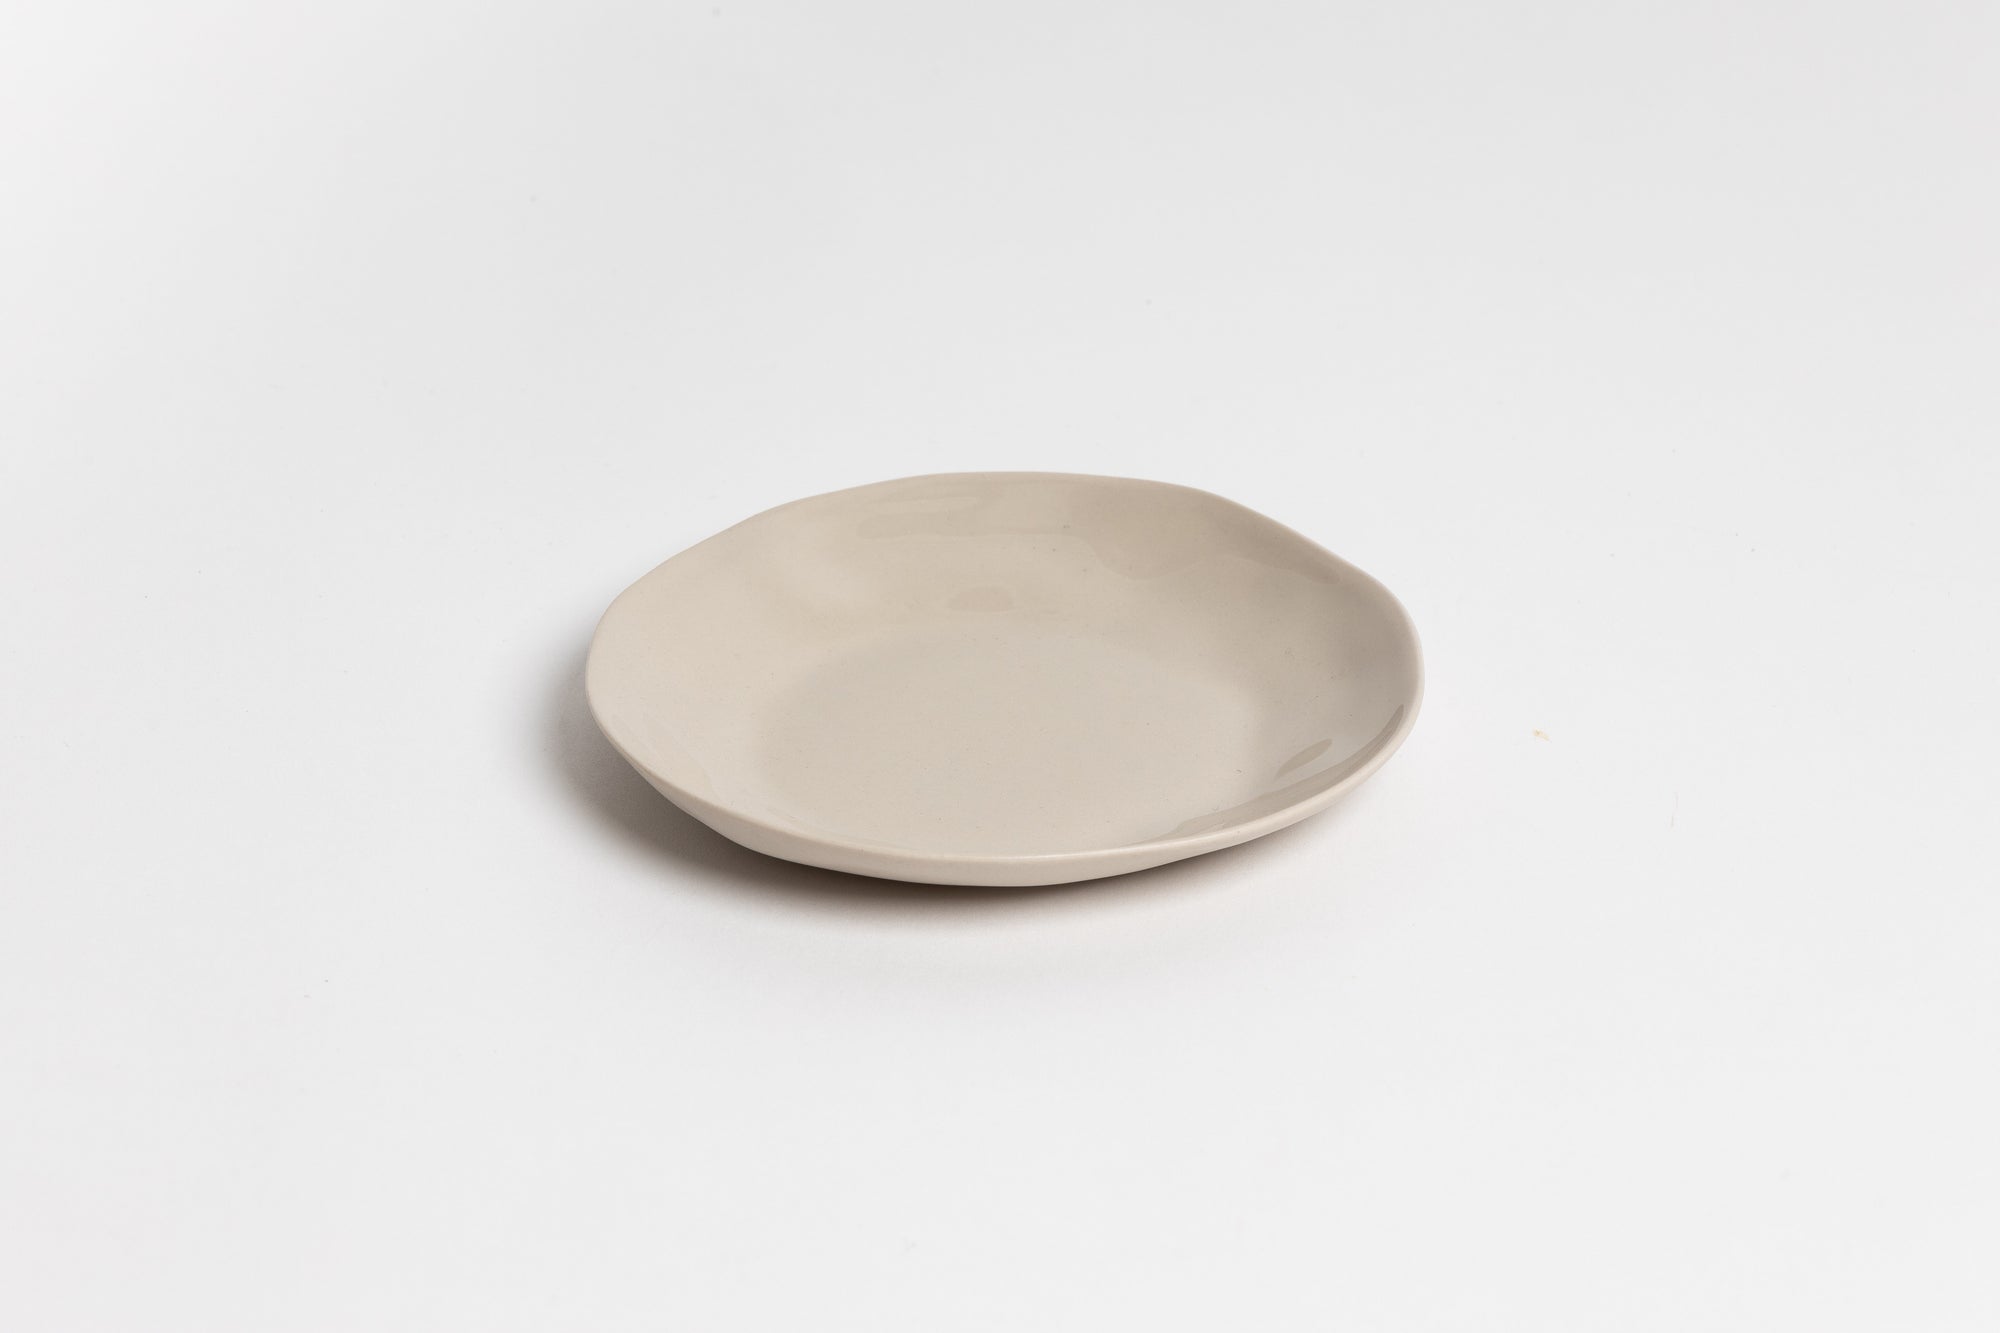 Ned Haan Round Dish 13cm - Bone